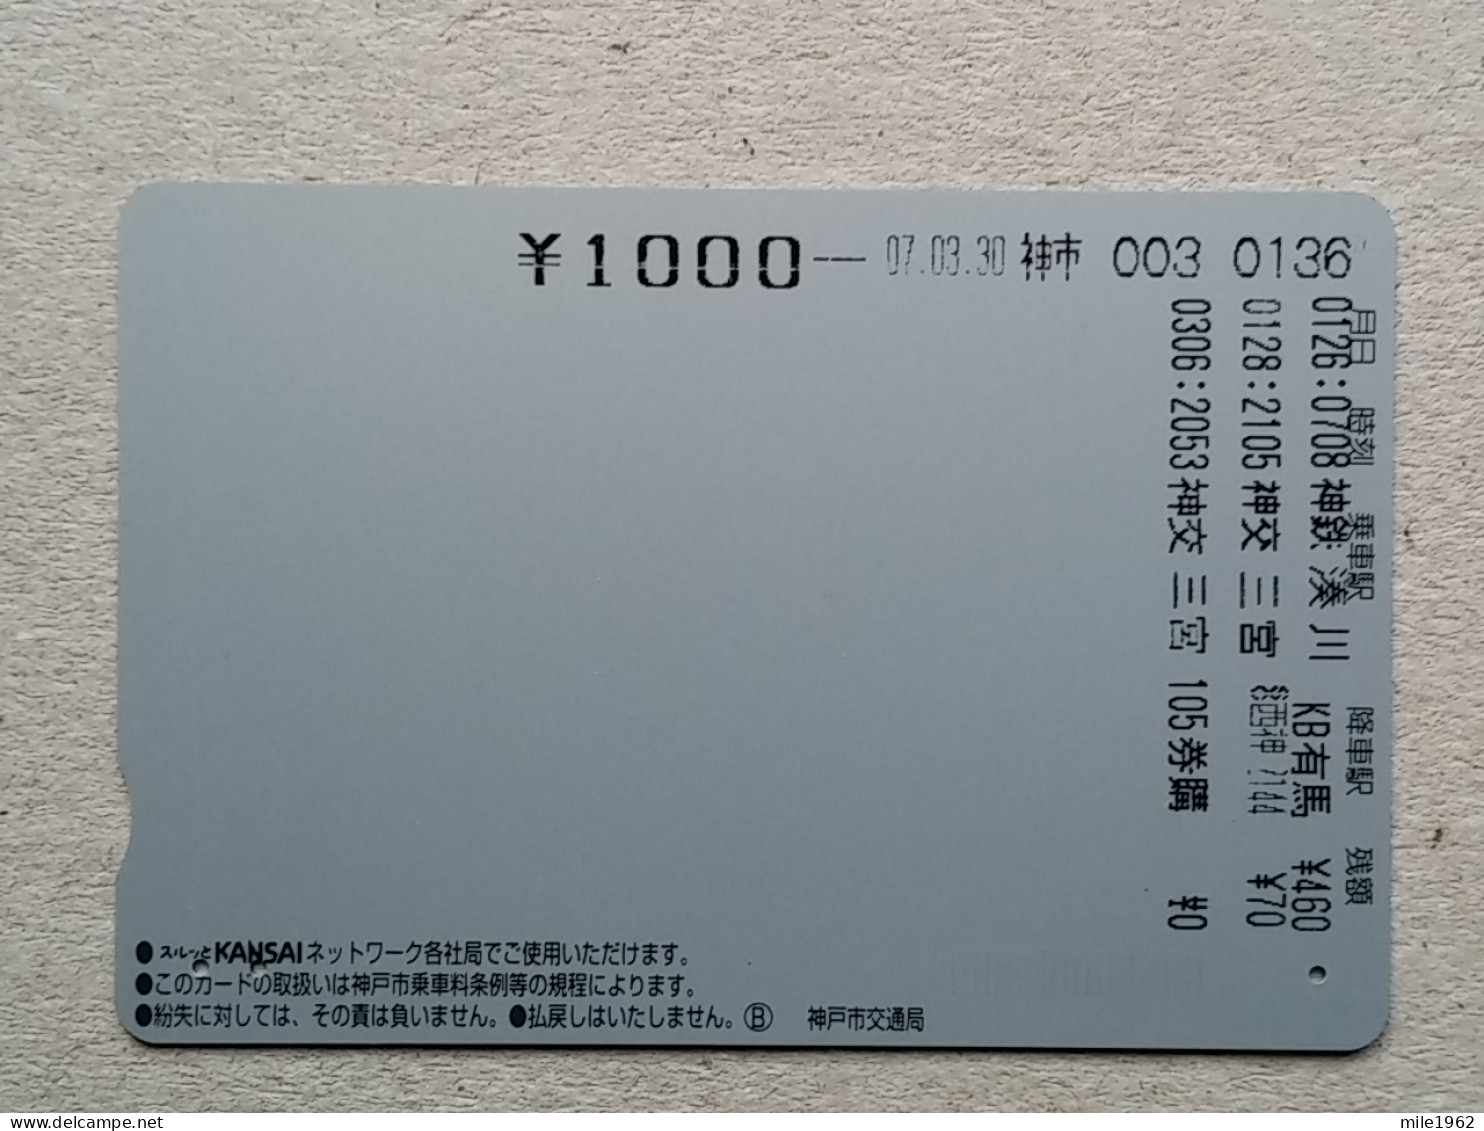 T-539- JAPAN, Japon, Nipon, Carte Prepayee, Prepaid Card, BUS, AUTOBUS - Voitures